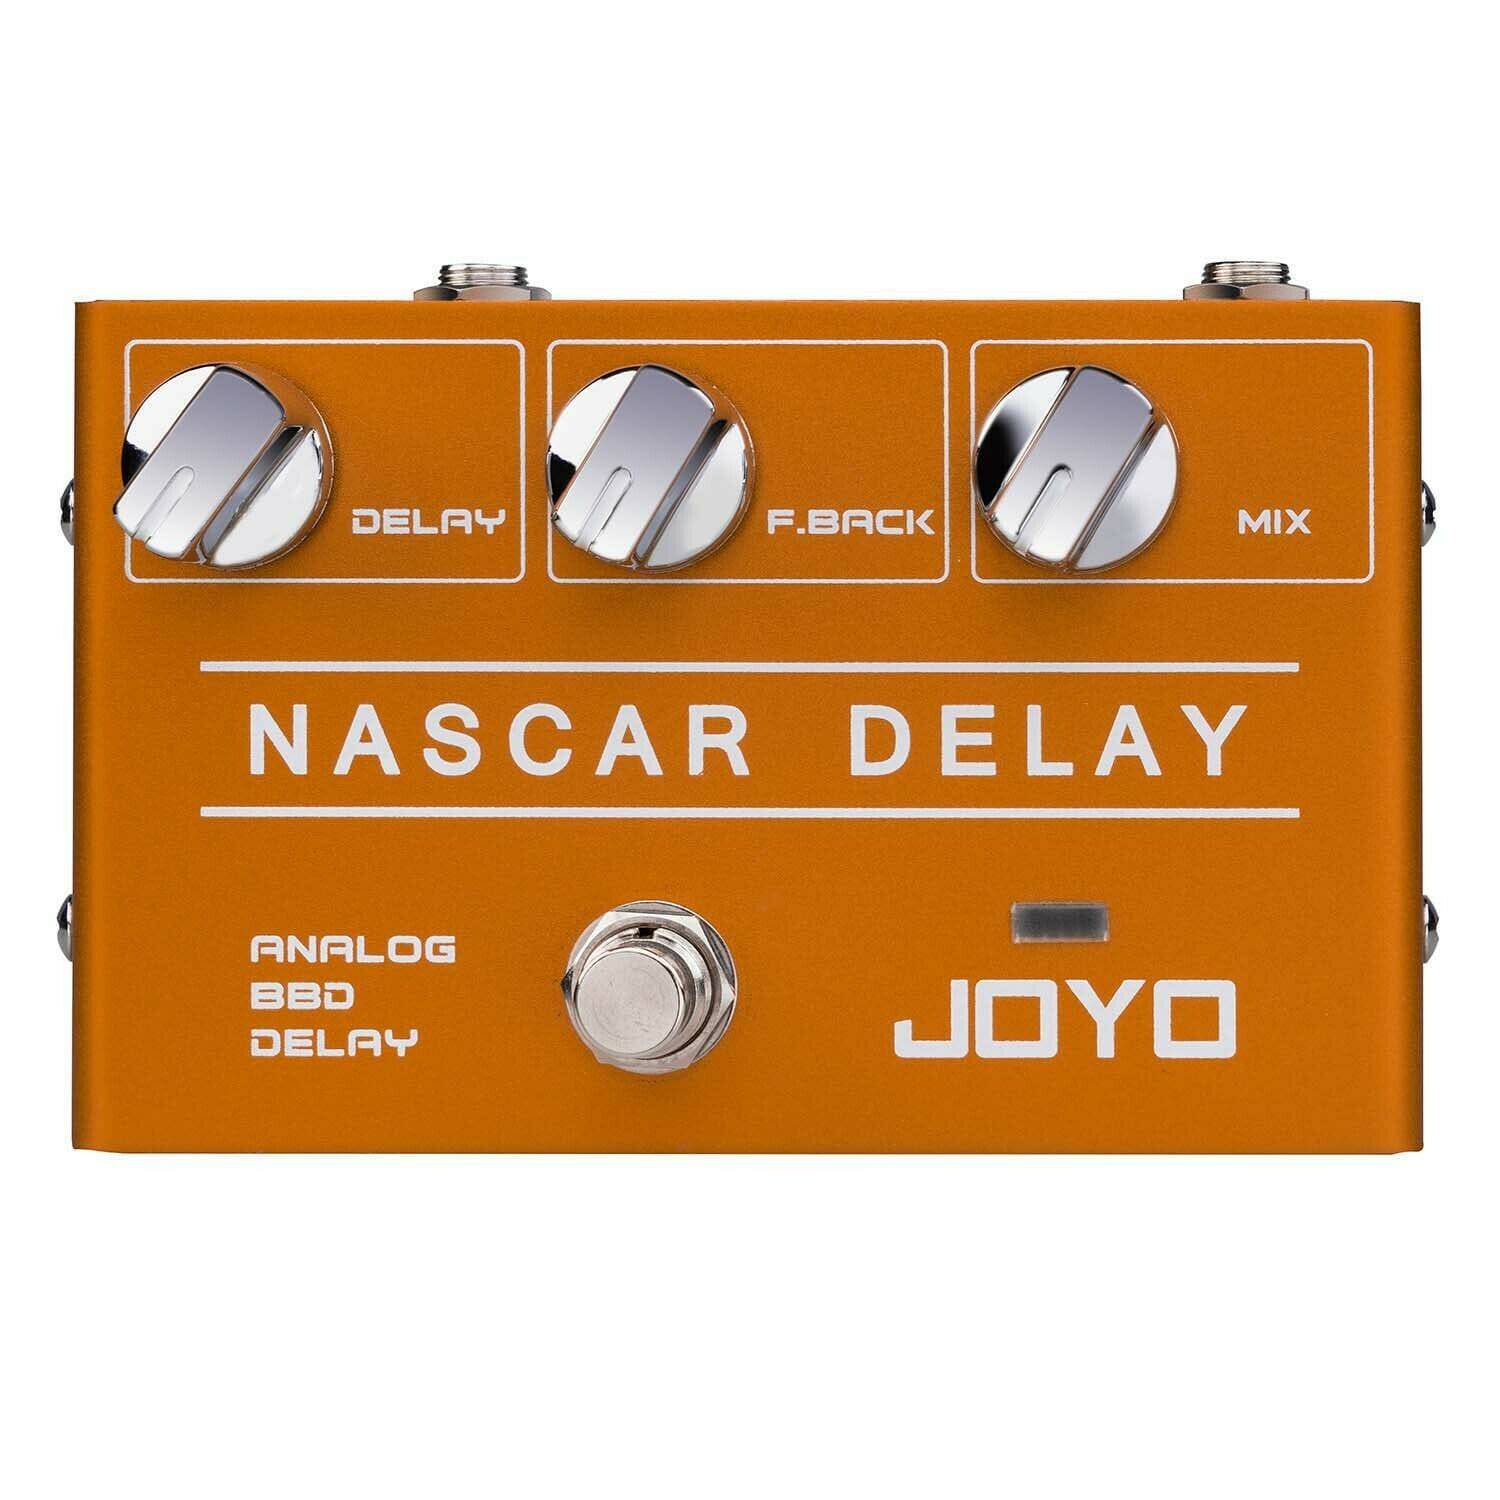 Joyo R-10 Nascar Delay Guitar Pedal